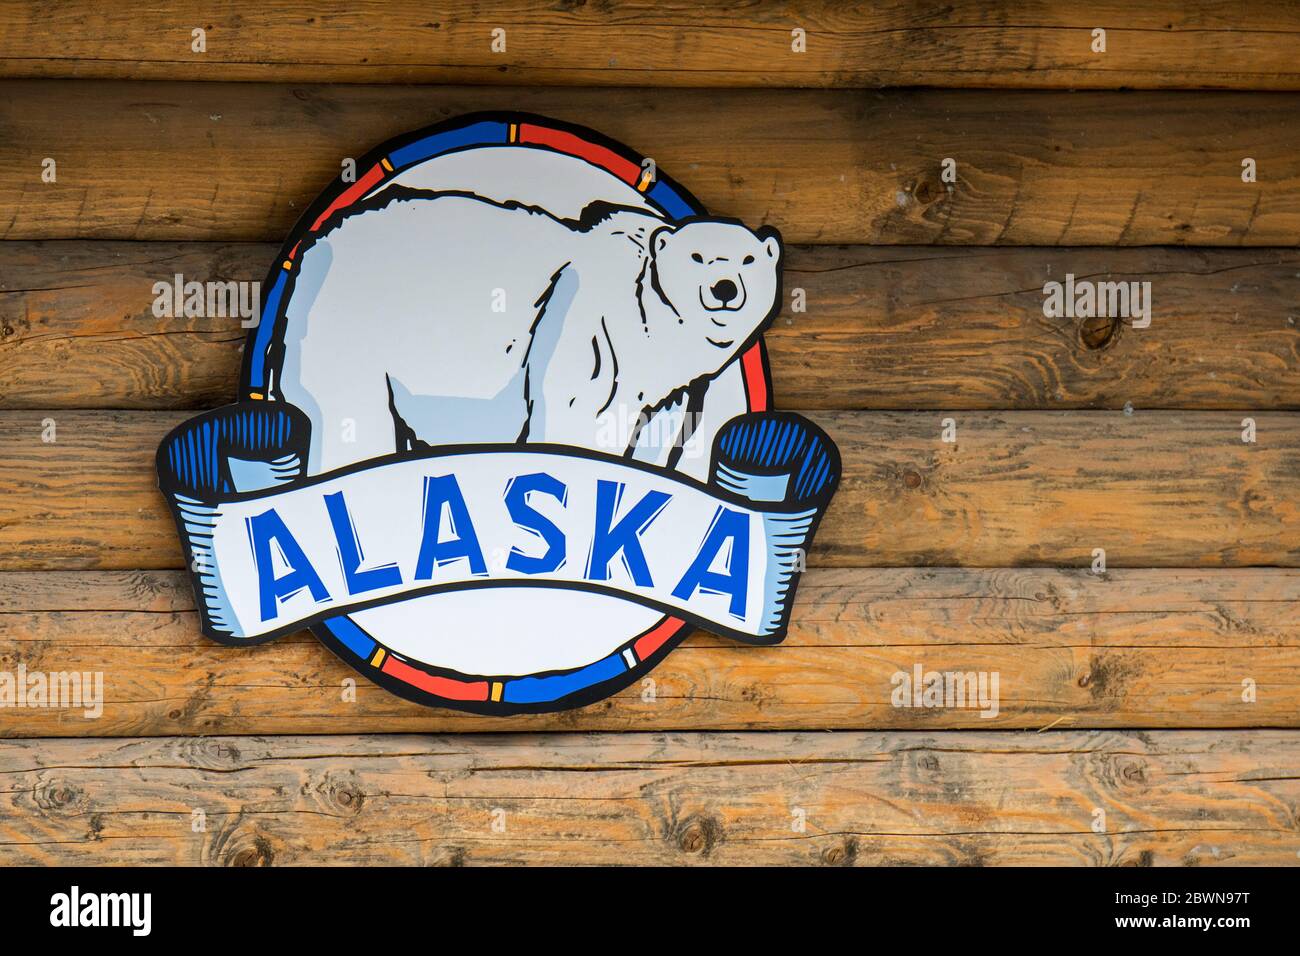 Alaska / emblème de l'Alaska / insigne avec symbole d'ours polaire accroché au mur en bois de la cabine en rondins Banque D'Images